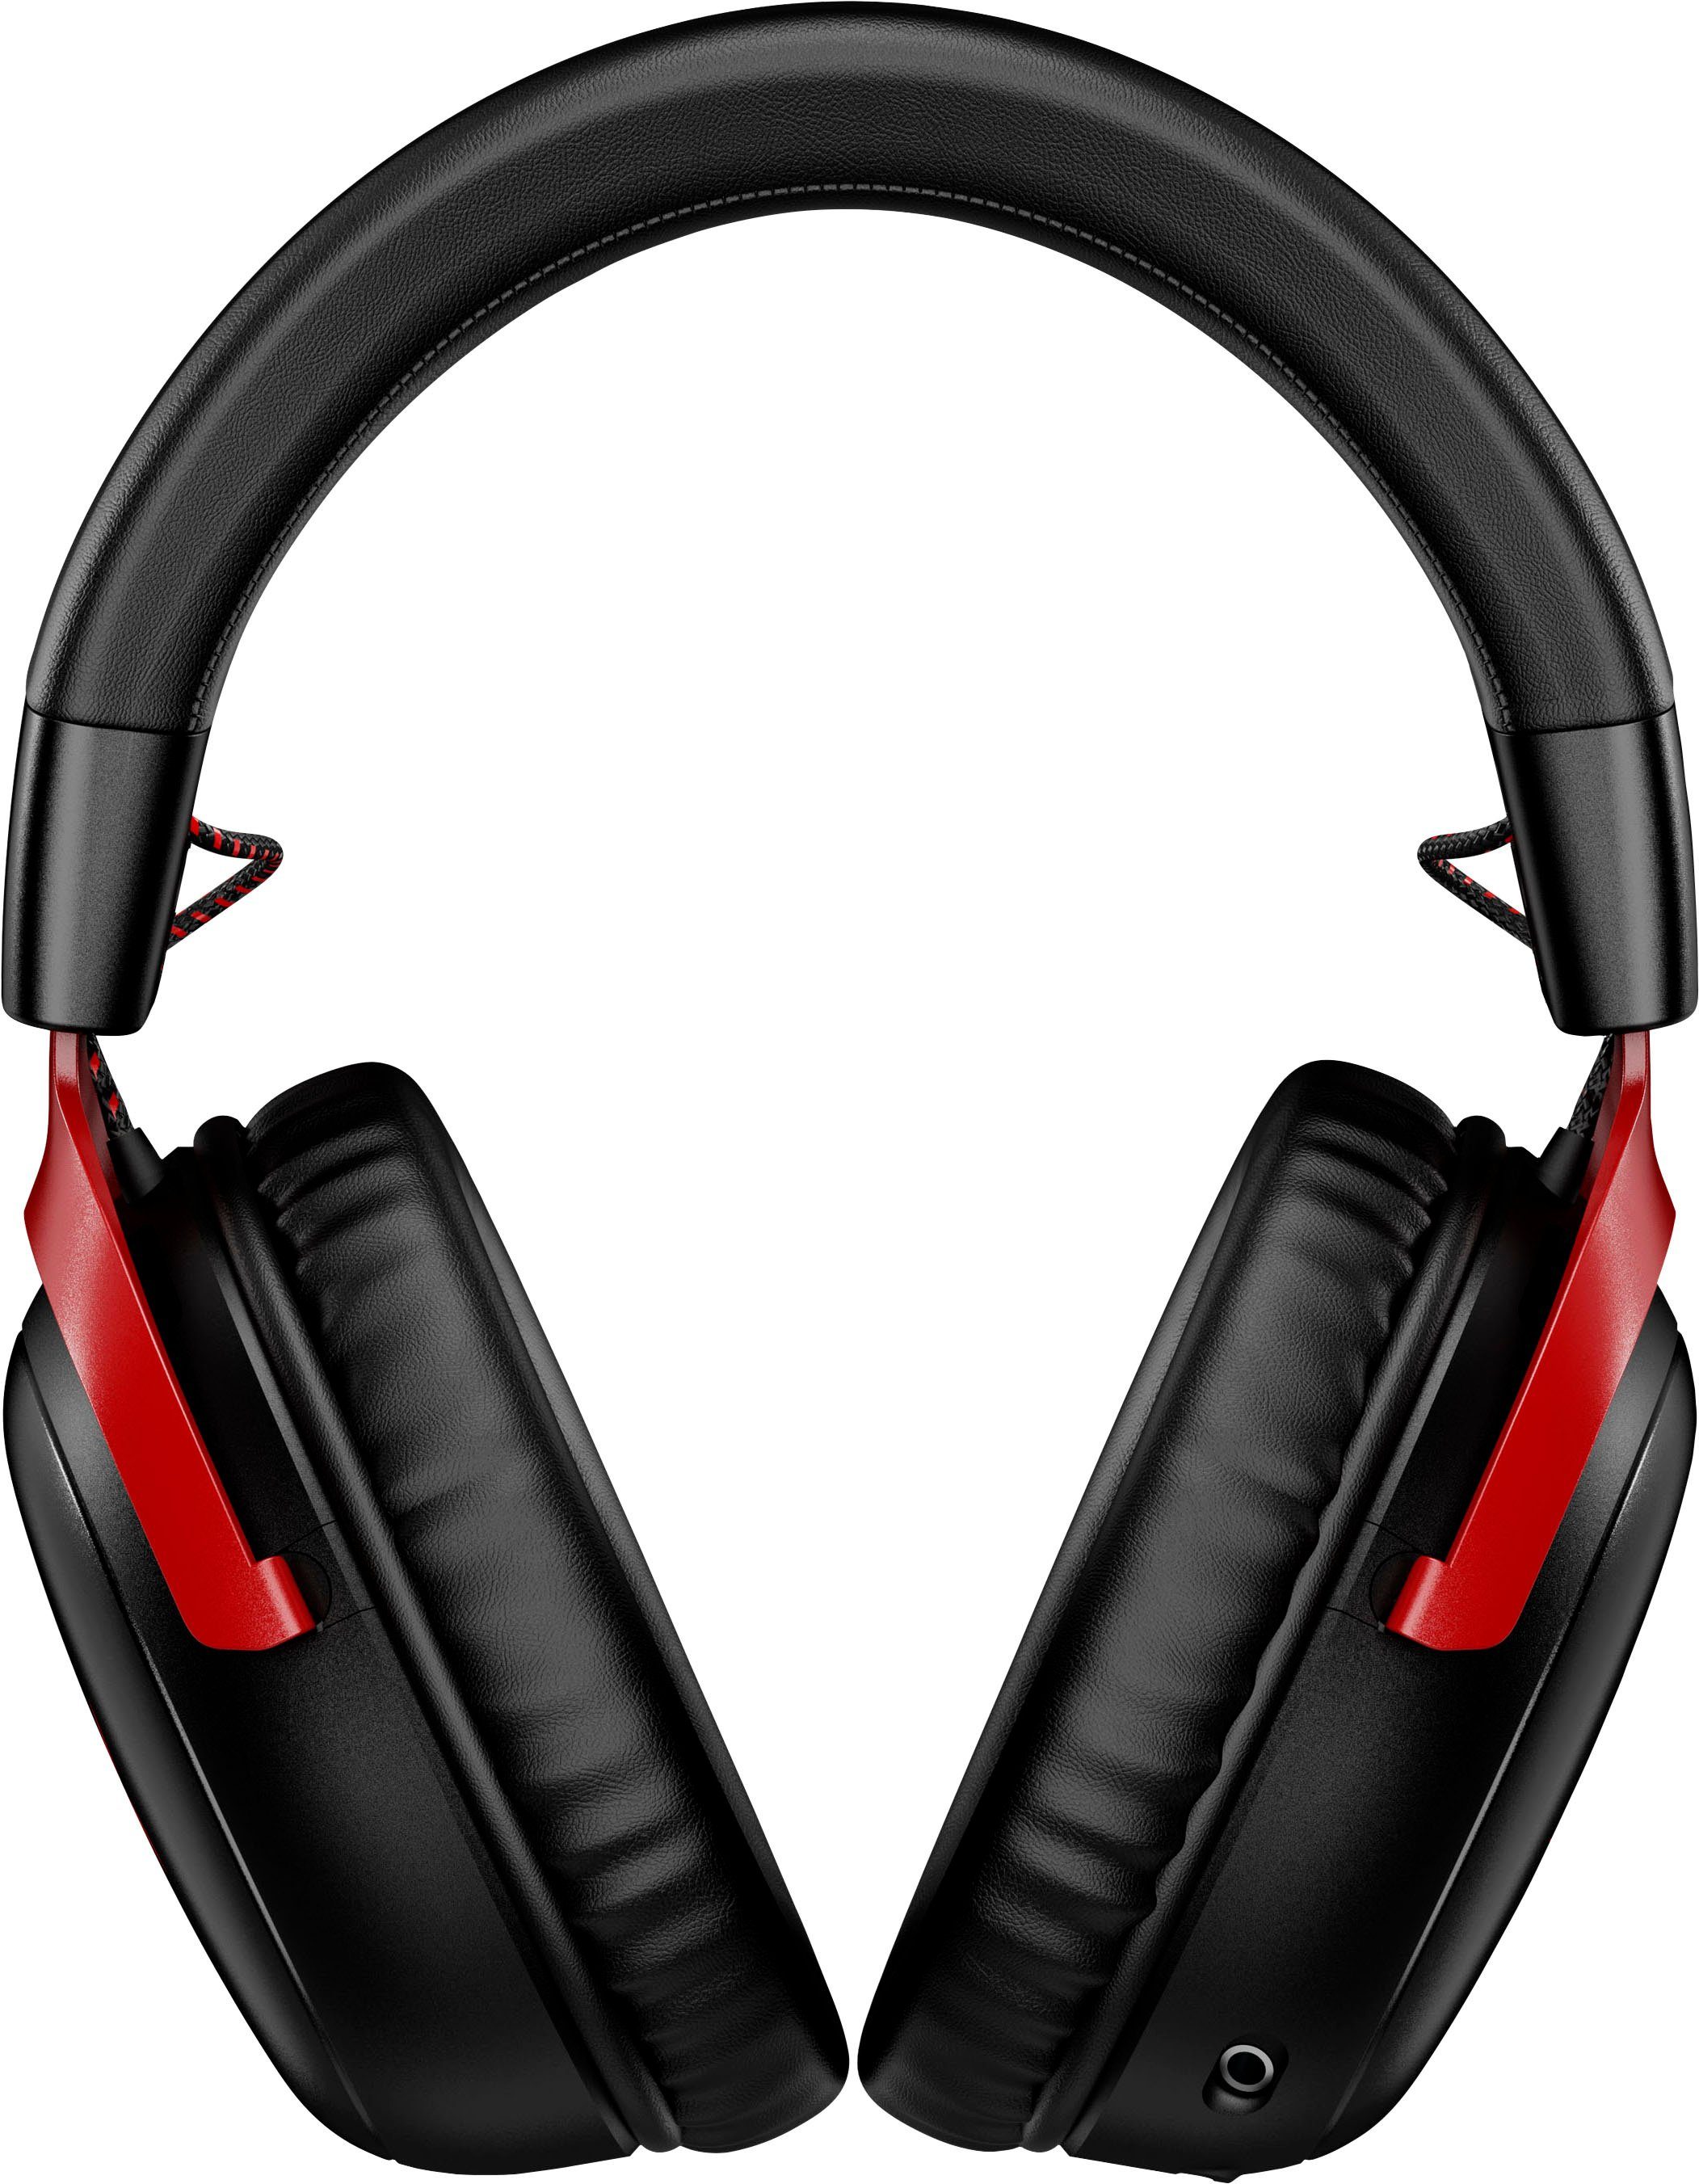 schwarz/rot Cloud Wireless (Geräuschisolierung, Wireless) HyperX III Gaming-Headset